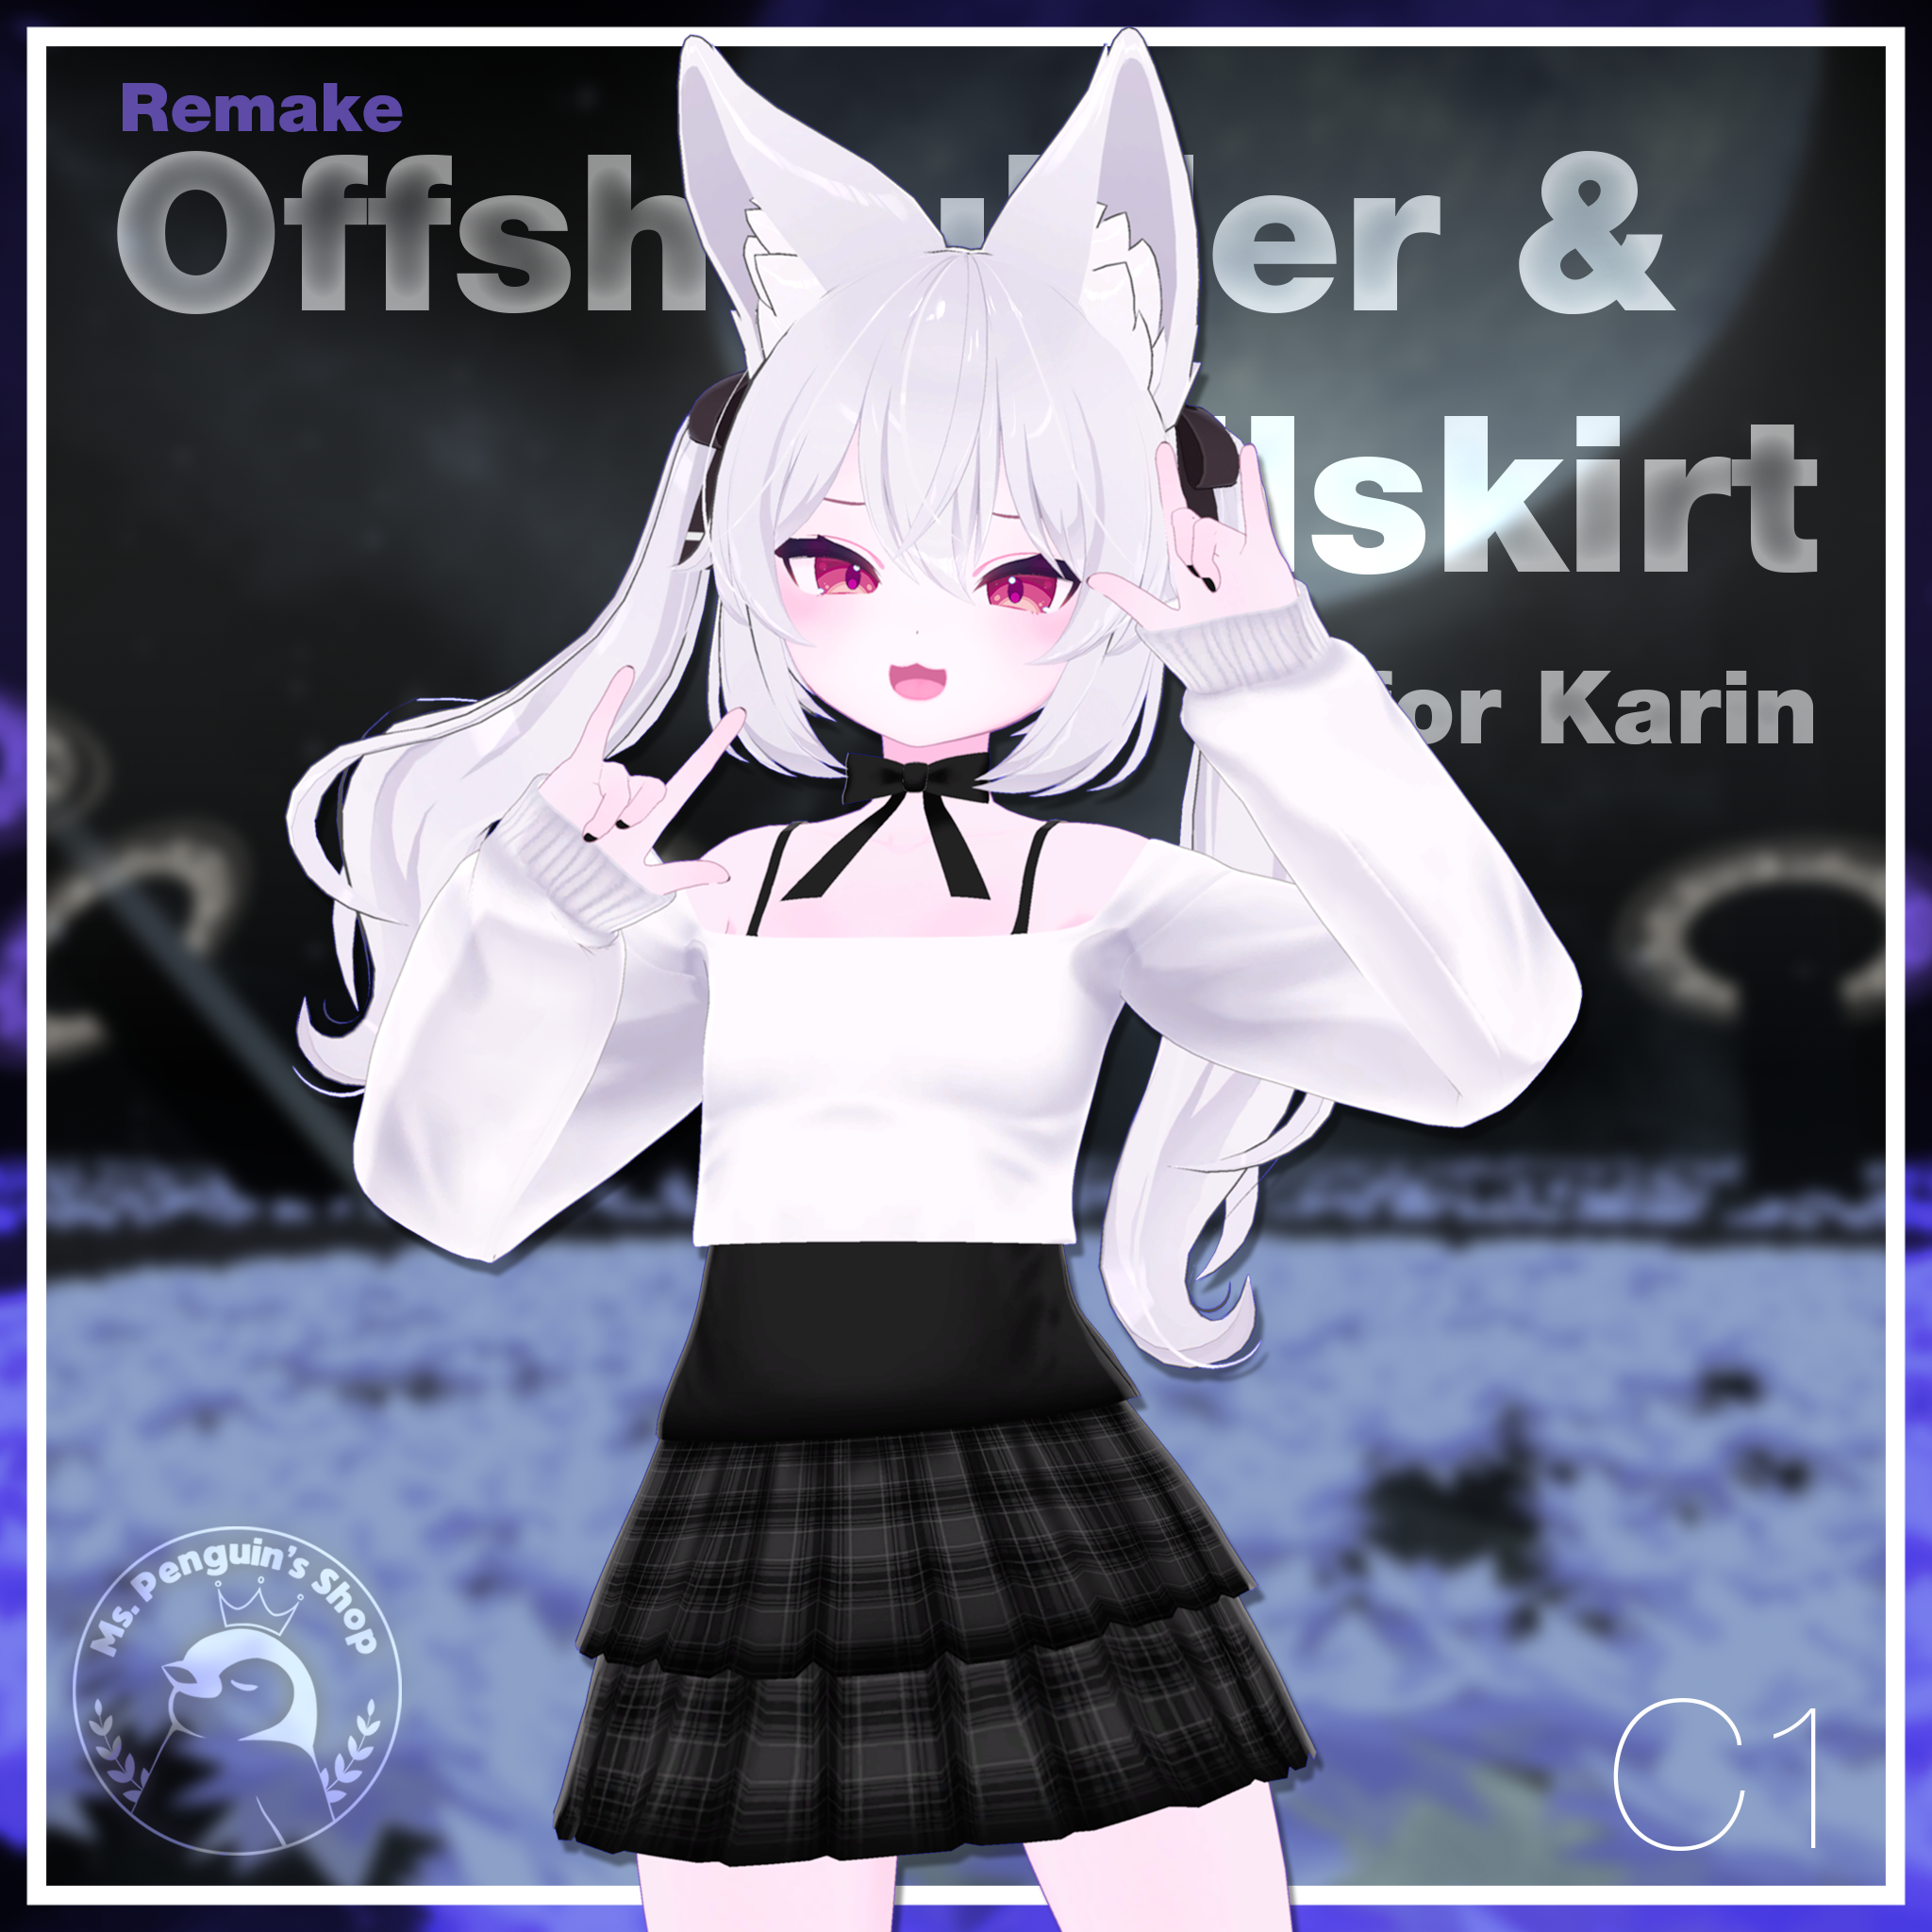 Offshoulder & Frillskirt for Karin / オフショルダー&フリルスカート